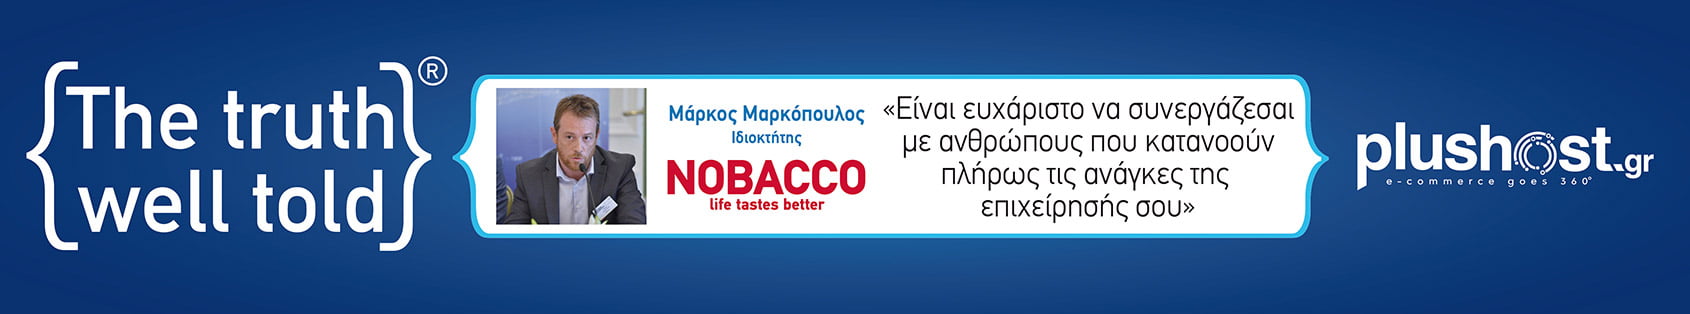 Nobacco.gr